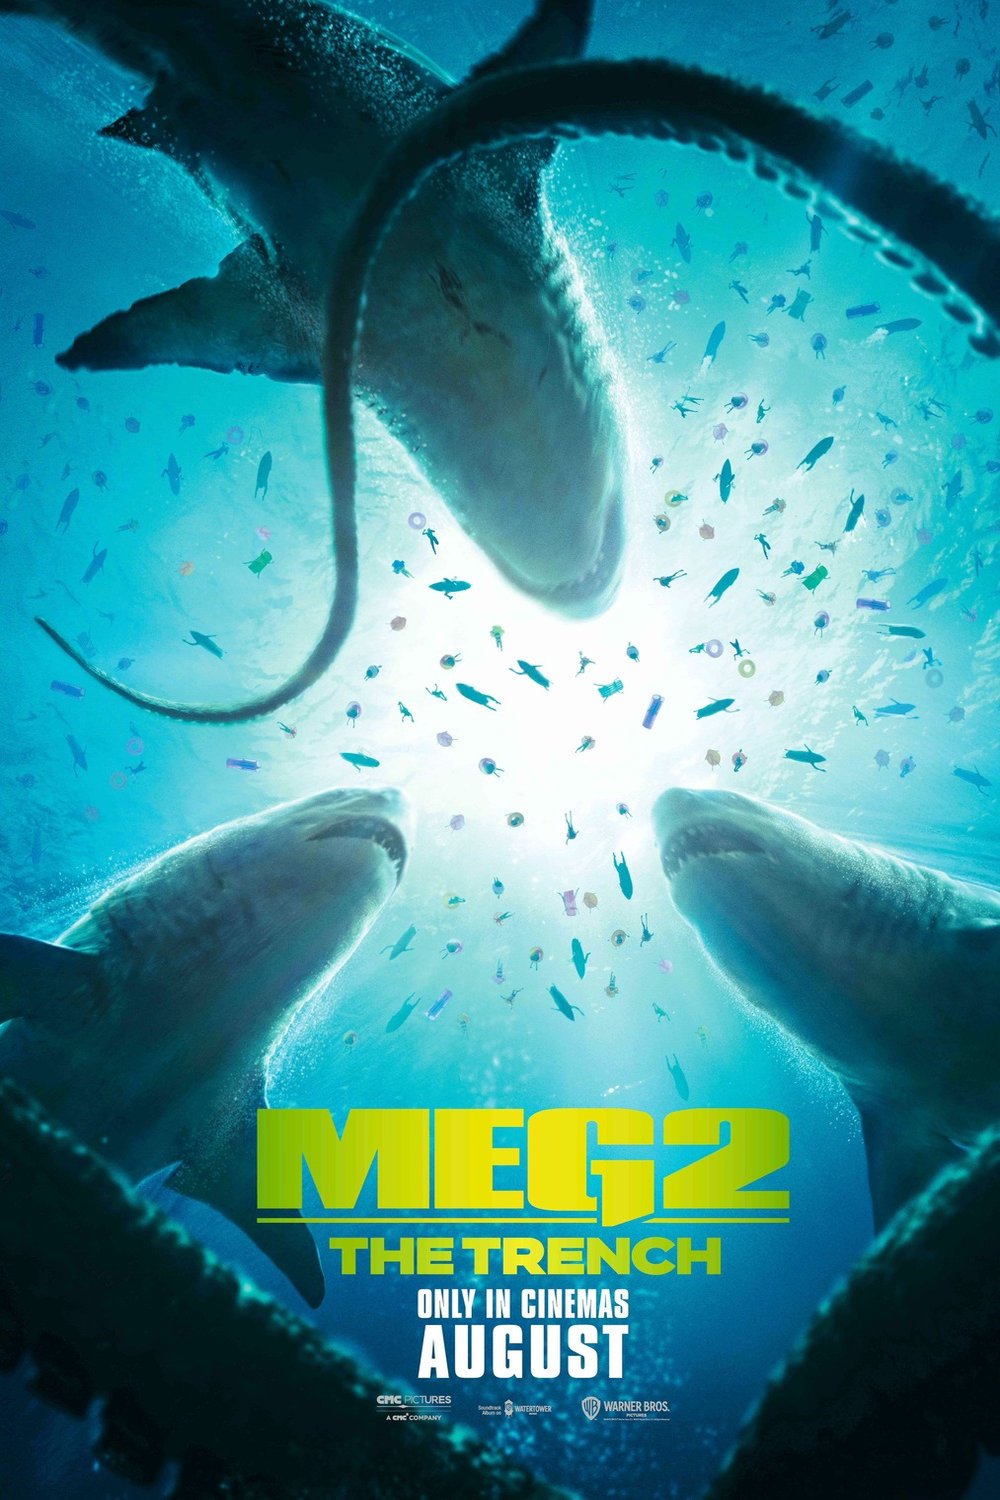 L'affiche du film Meg 2: The Trench